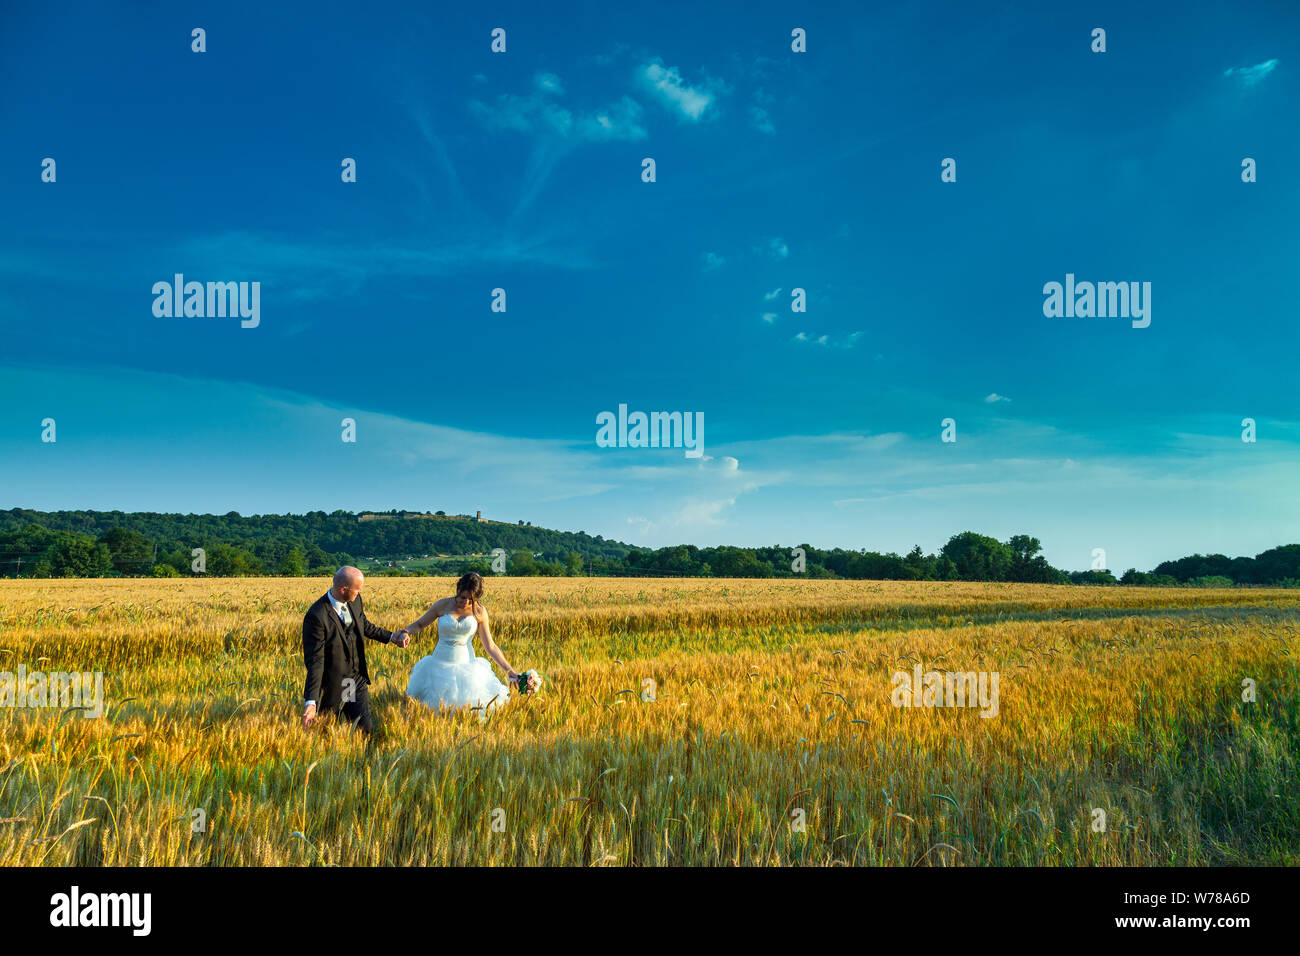 Pareja romántica en el día de la boda en un campo de trigo, símbolo de la fertilidad Foto de stock